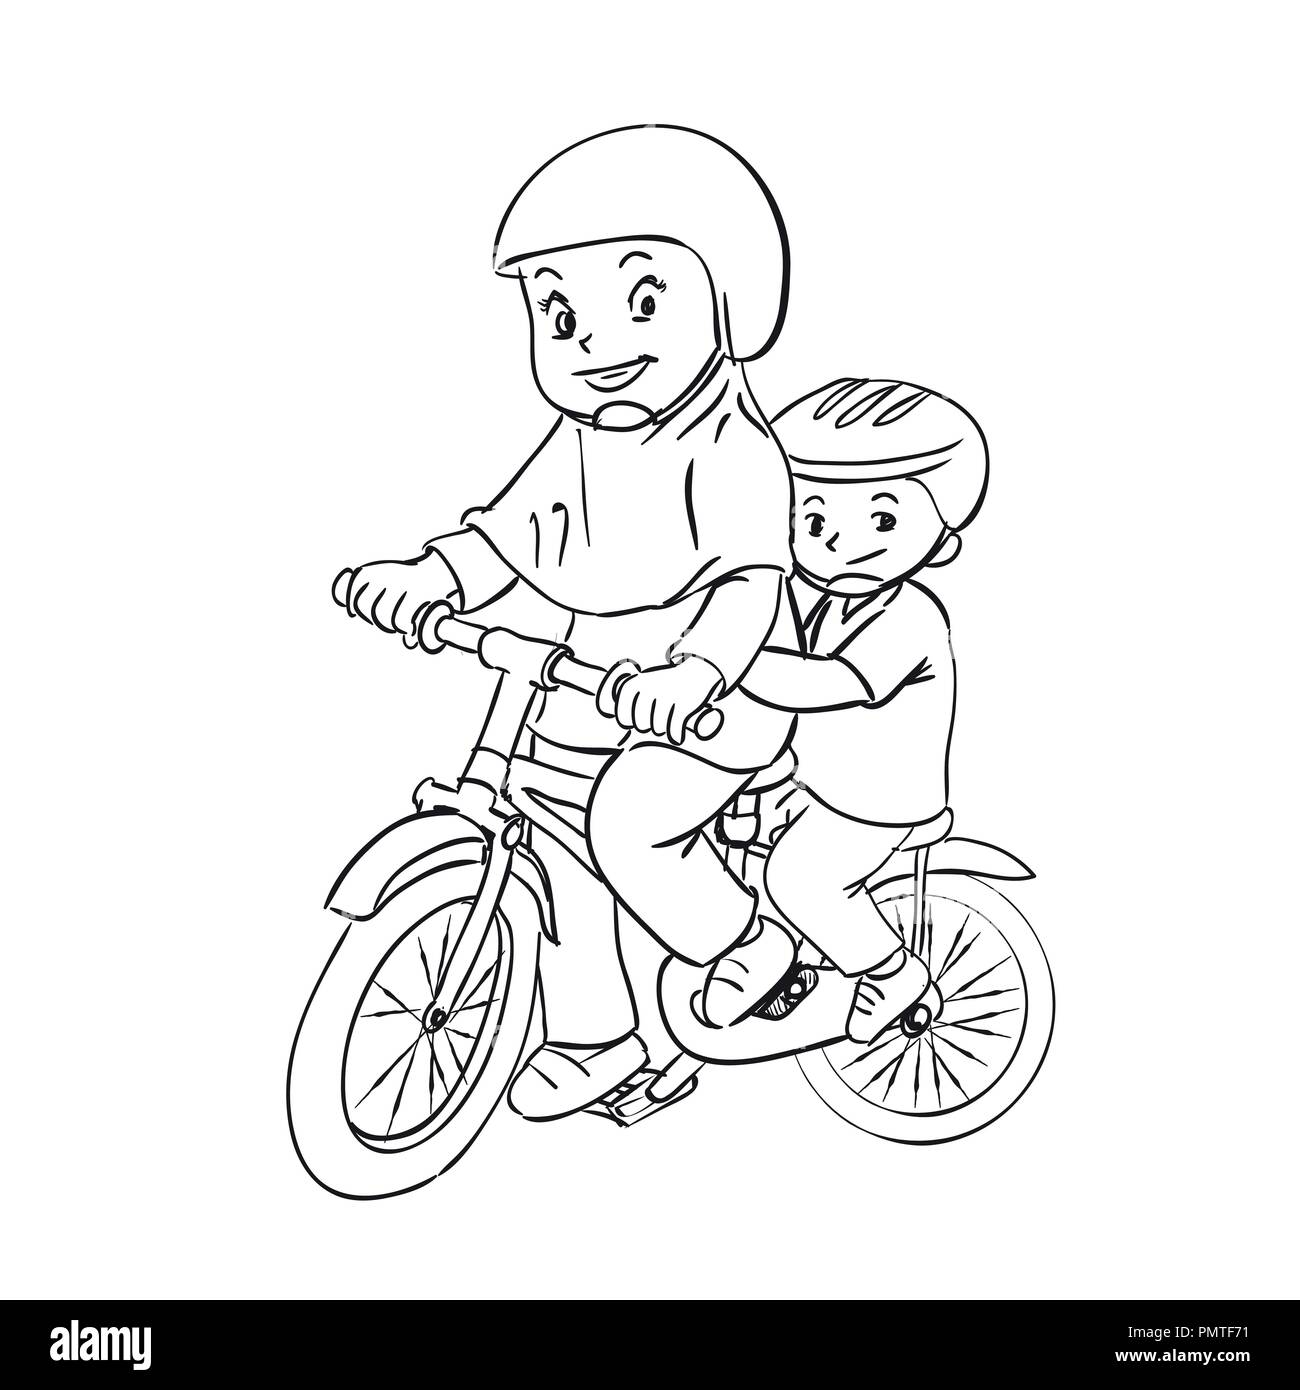 Раскраска мальчик и девочка на велосипеде